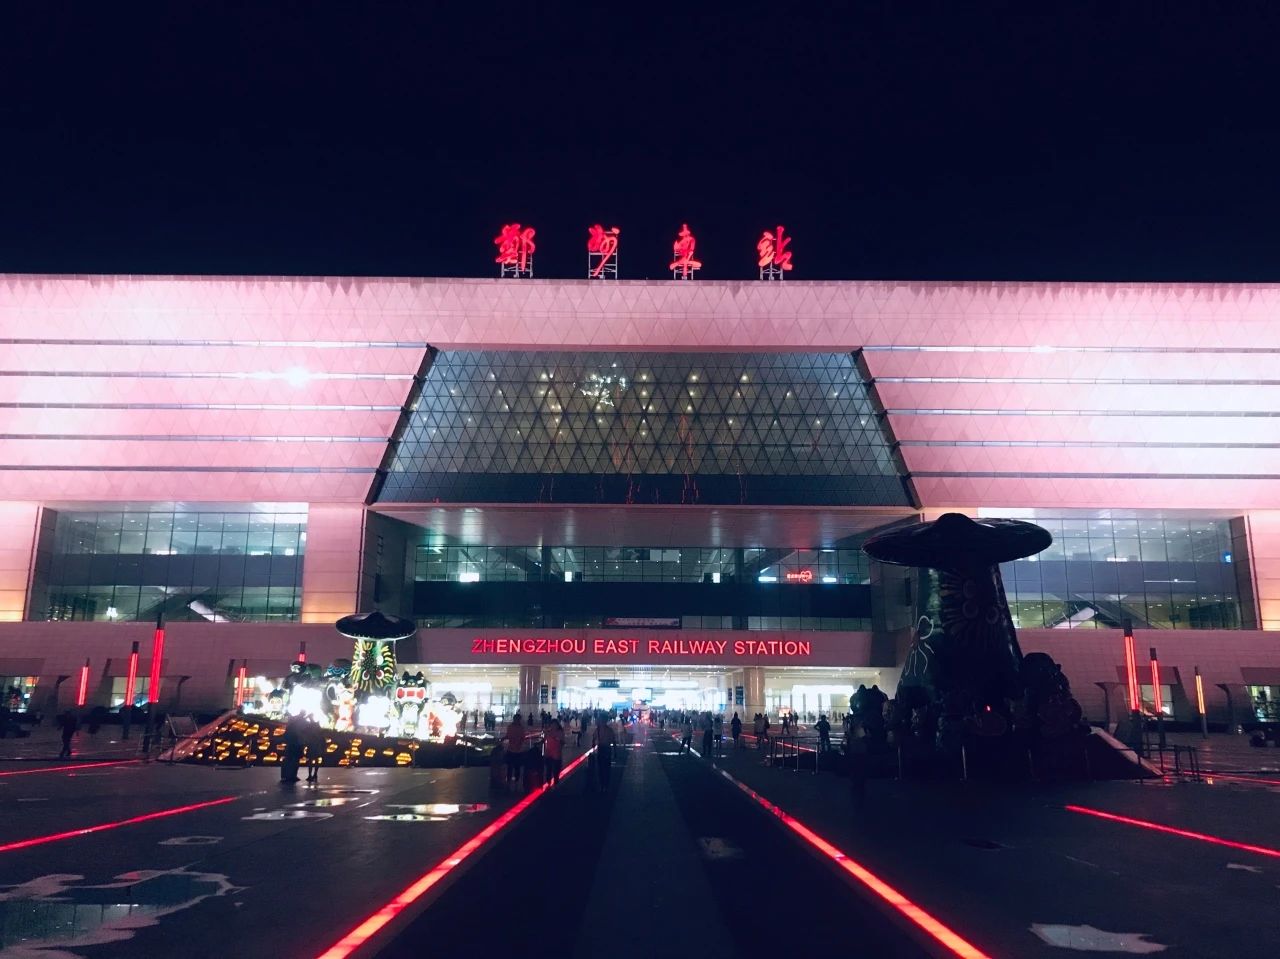 郑州火车站 夜里图片